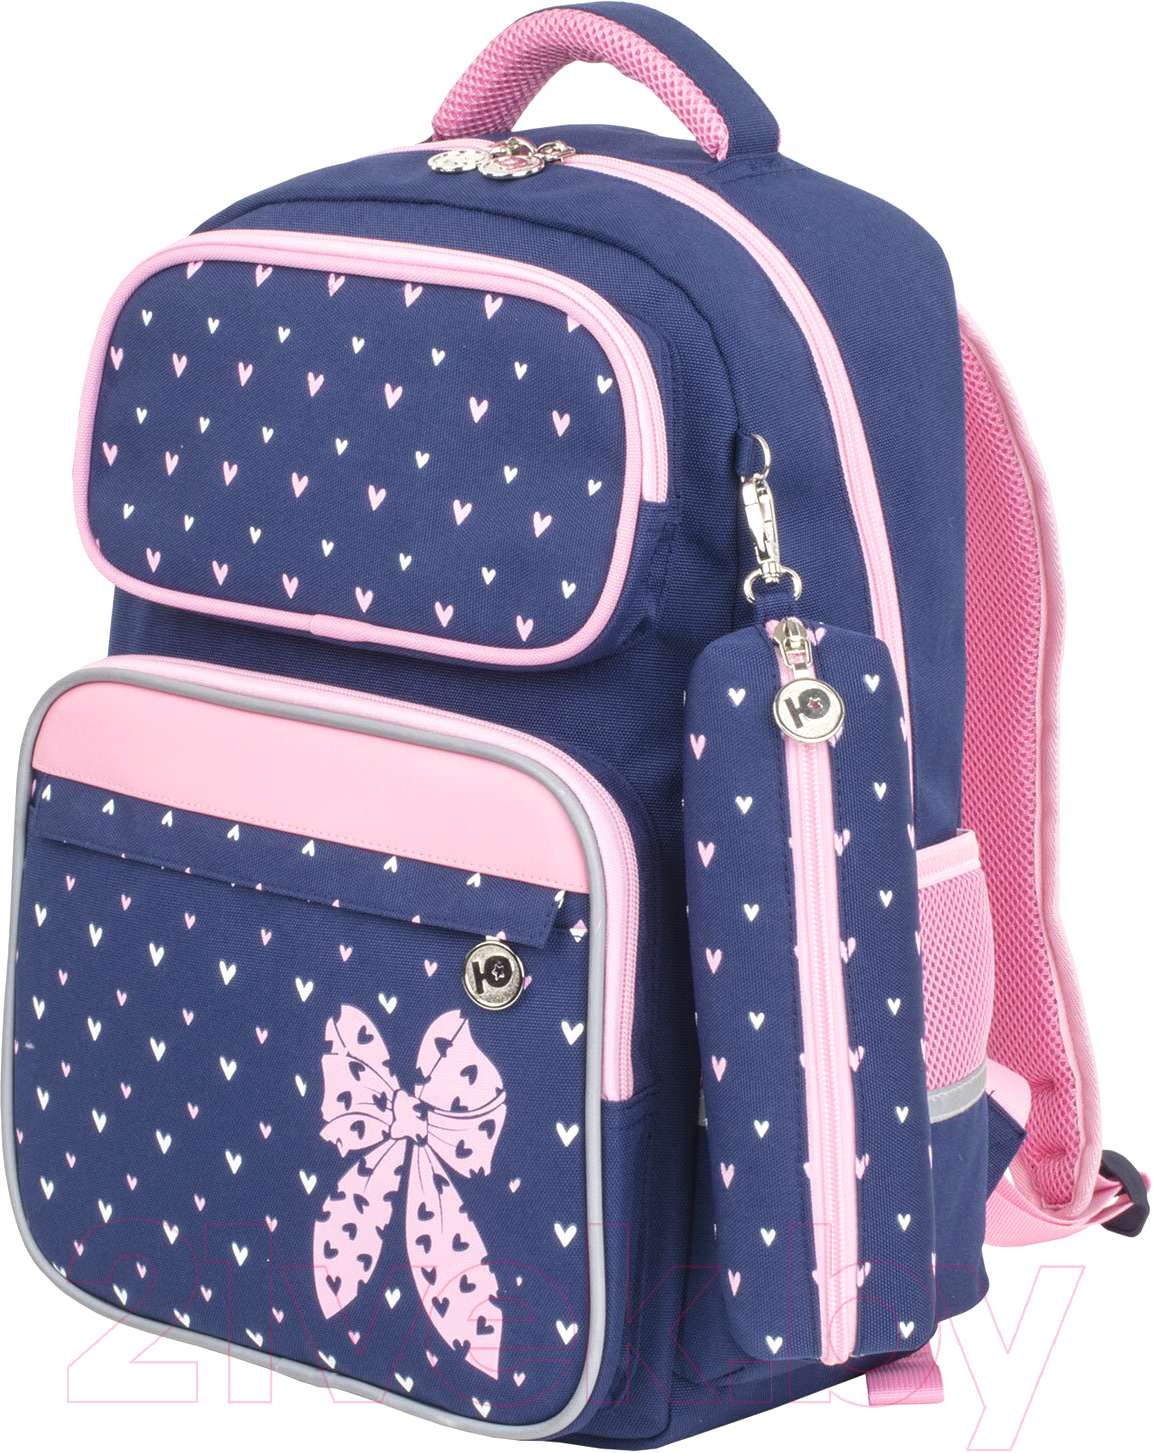 Школьный рюкзак Юнландия Pink Bow / 229972